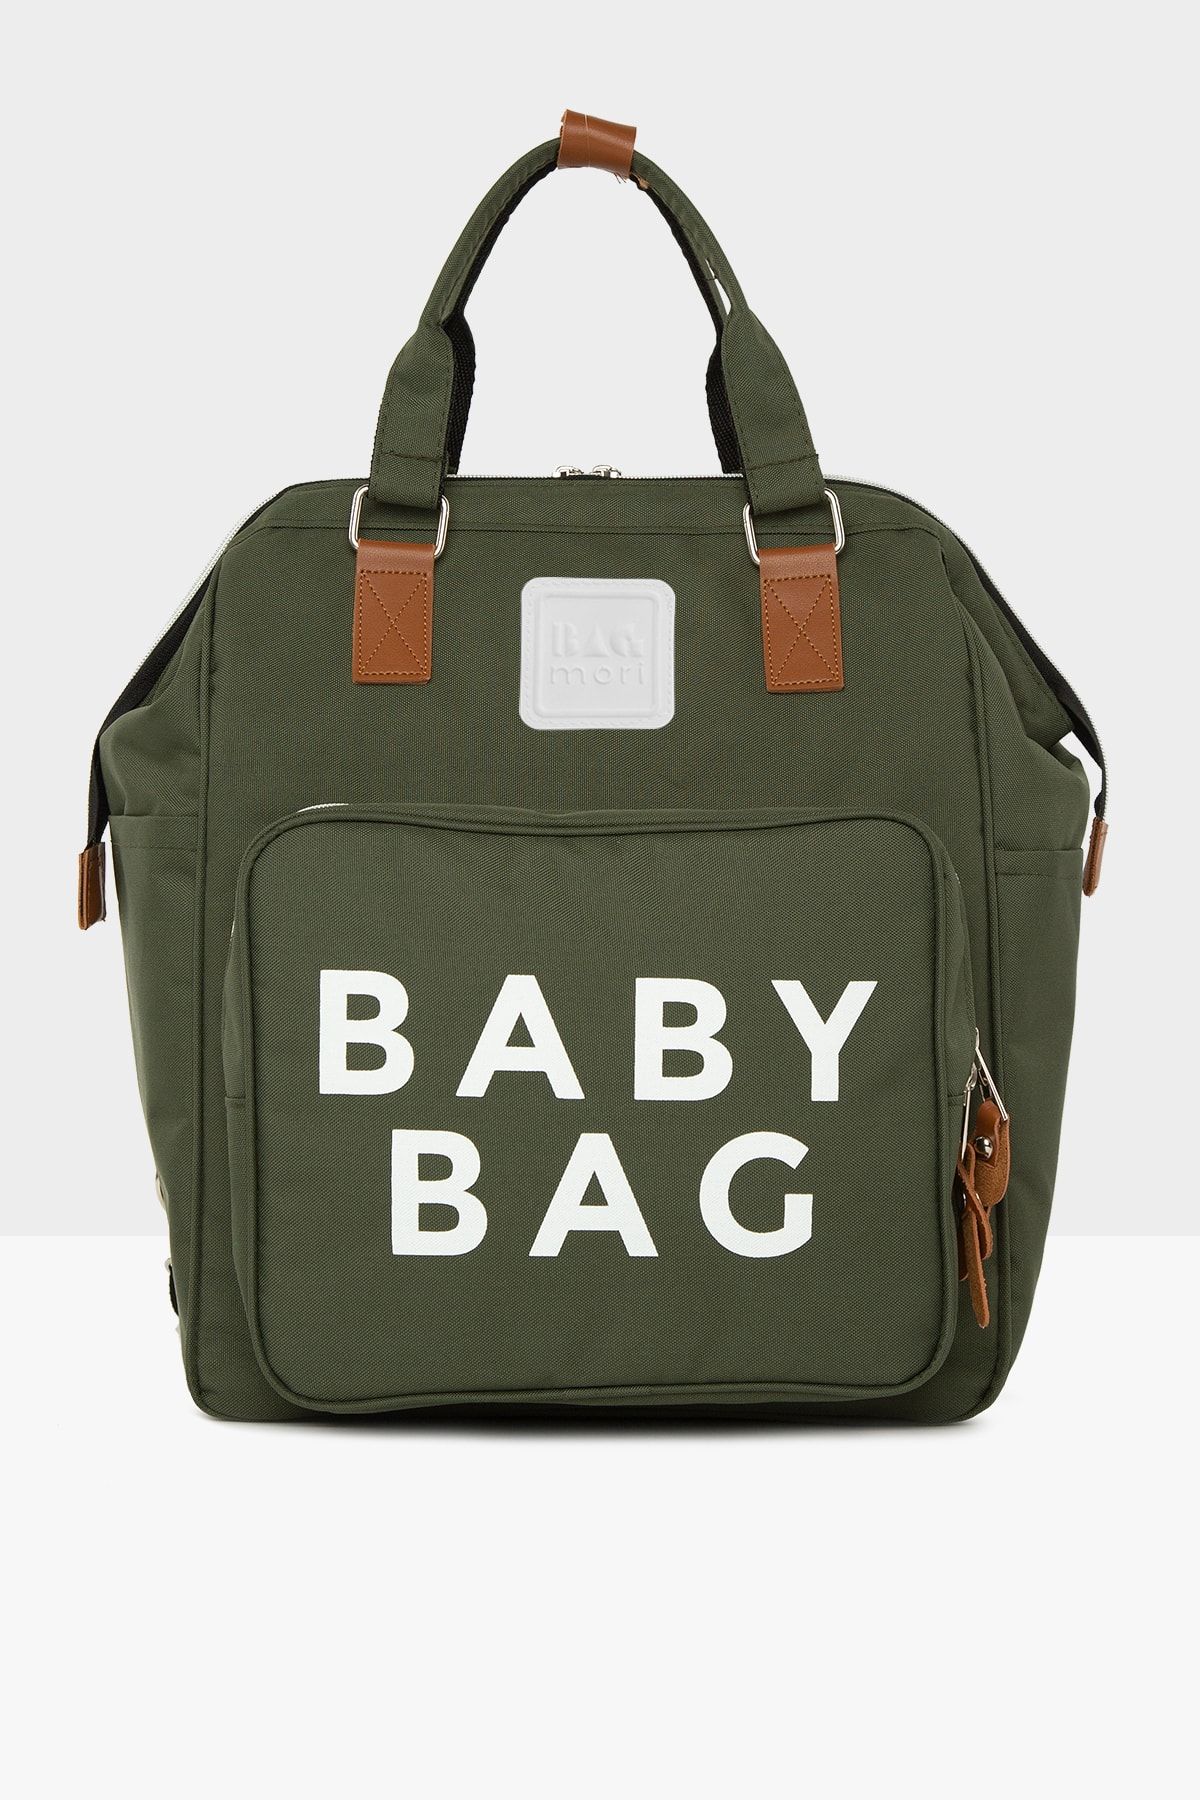 Bagmori Haki Baby Bag Baskılı Cepli Anne Bebek Bakım Sırt Çantası M000005163